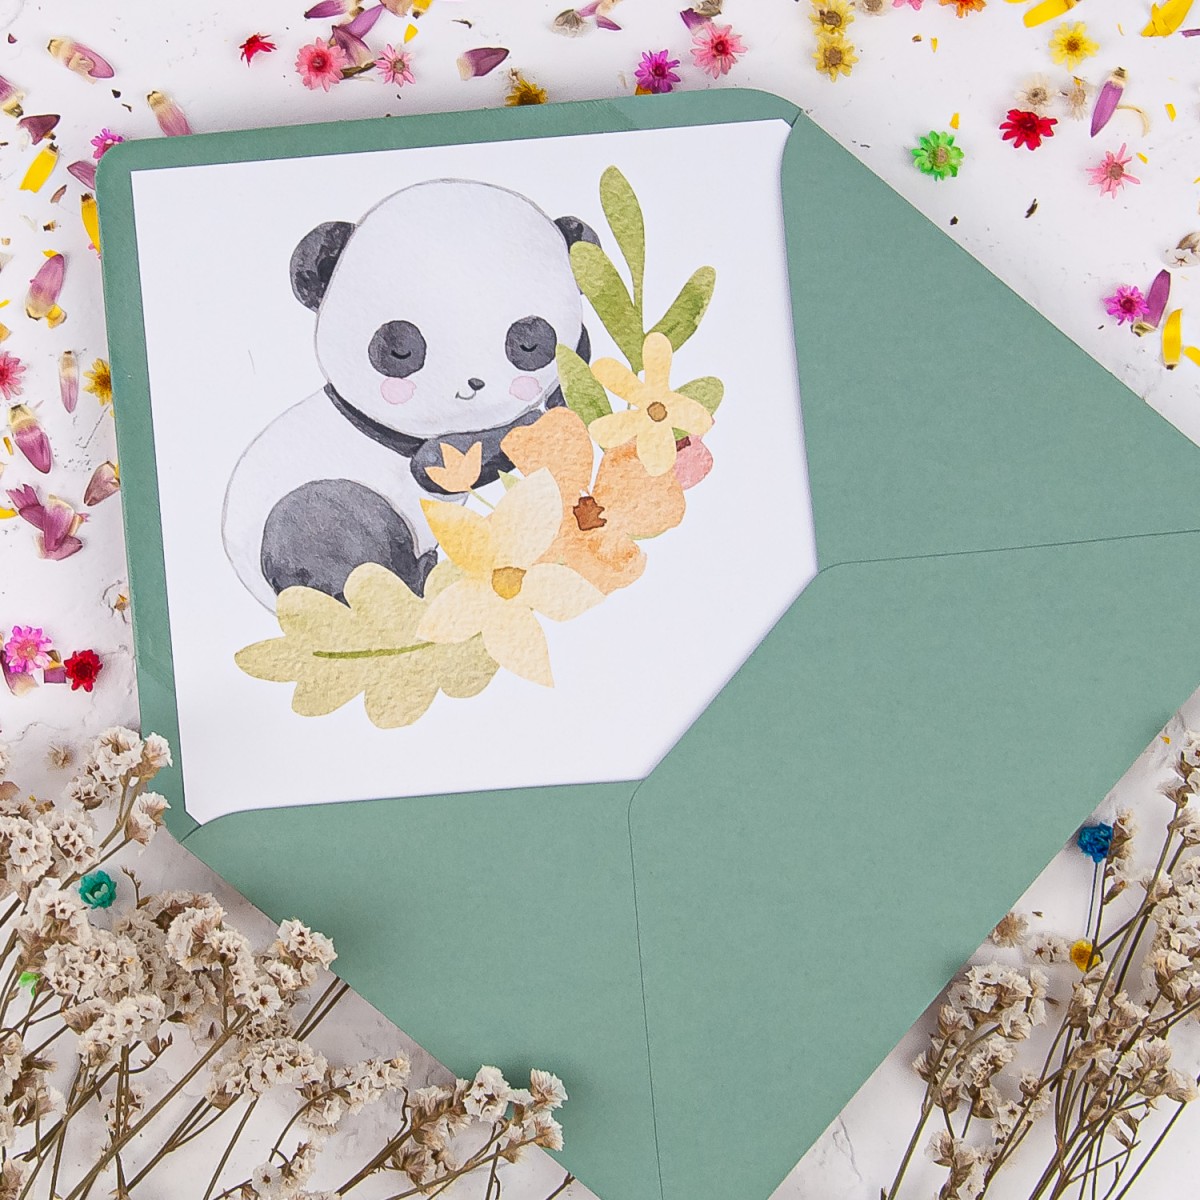 Zaproszenia na Urodziny dla dziecka z pandą - Little Panda